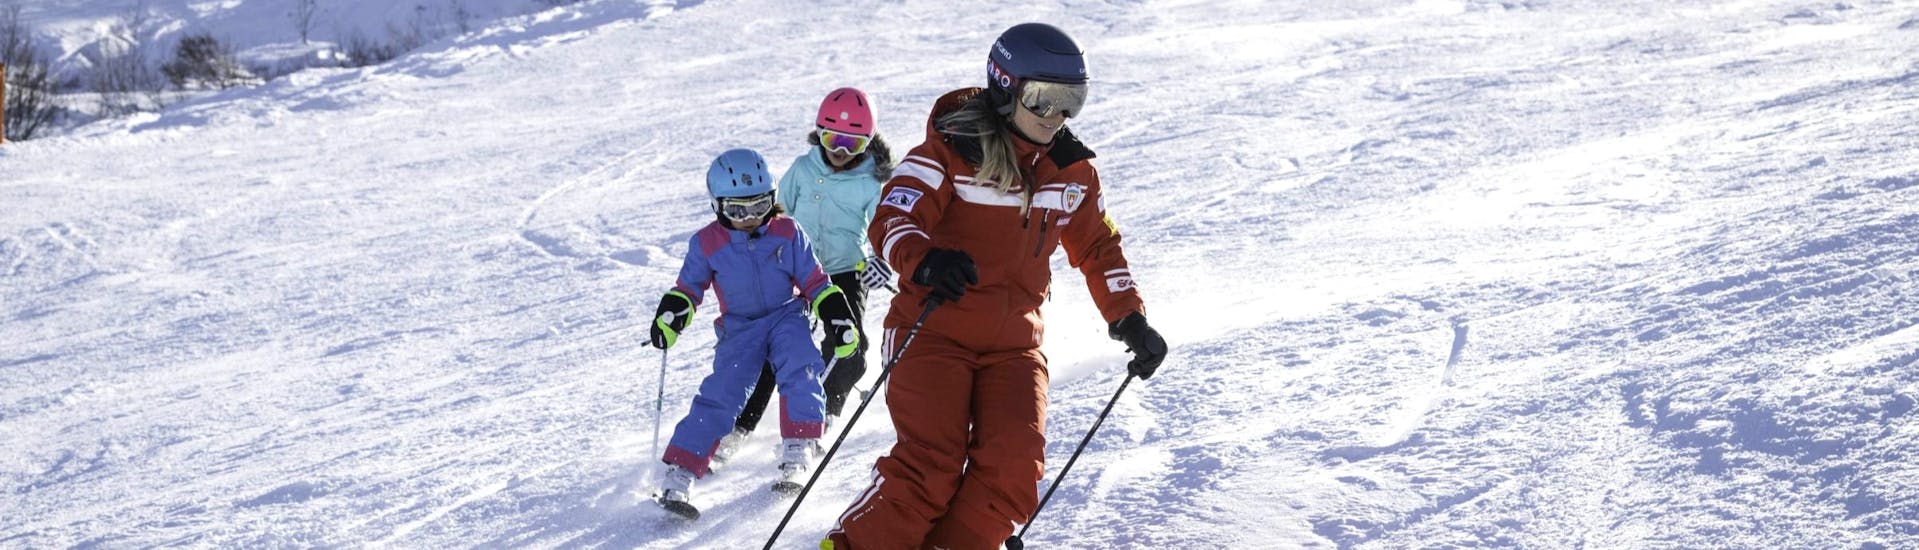 Clases de esquí para niños a partir de 3 años para avanzados.